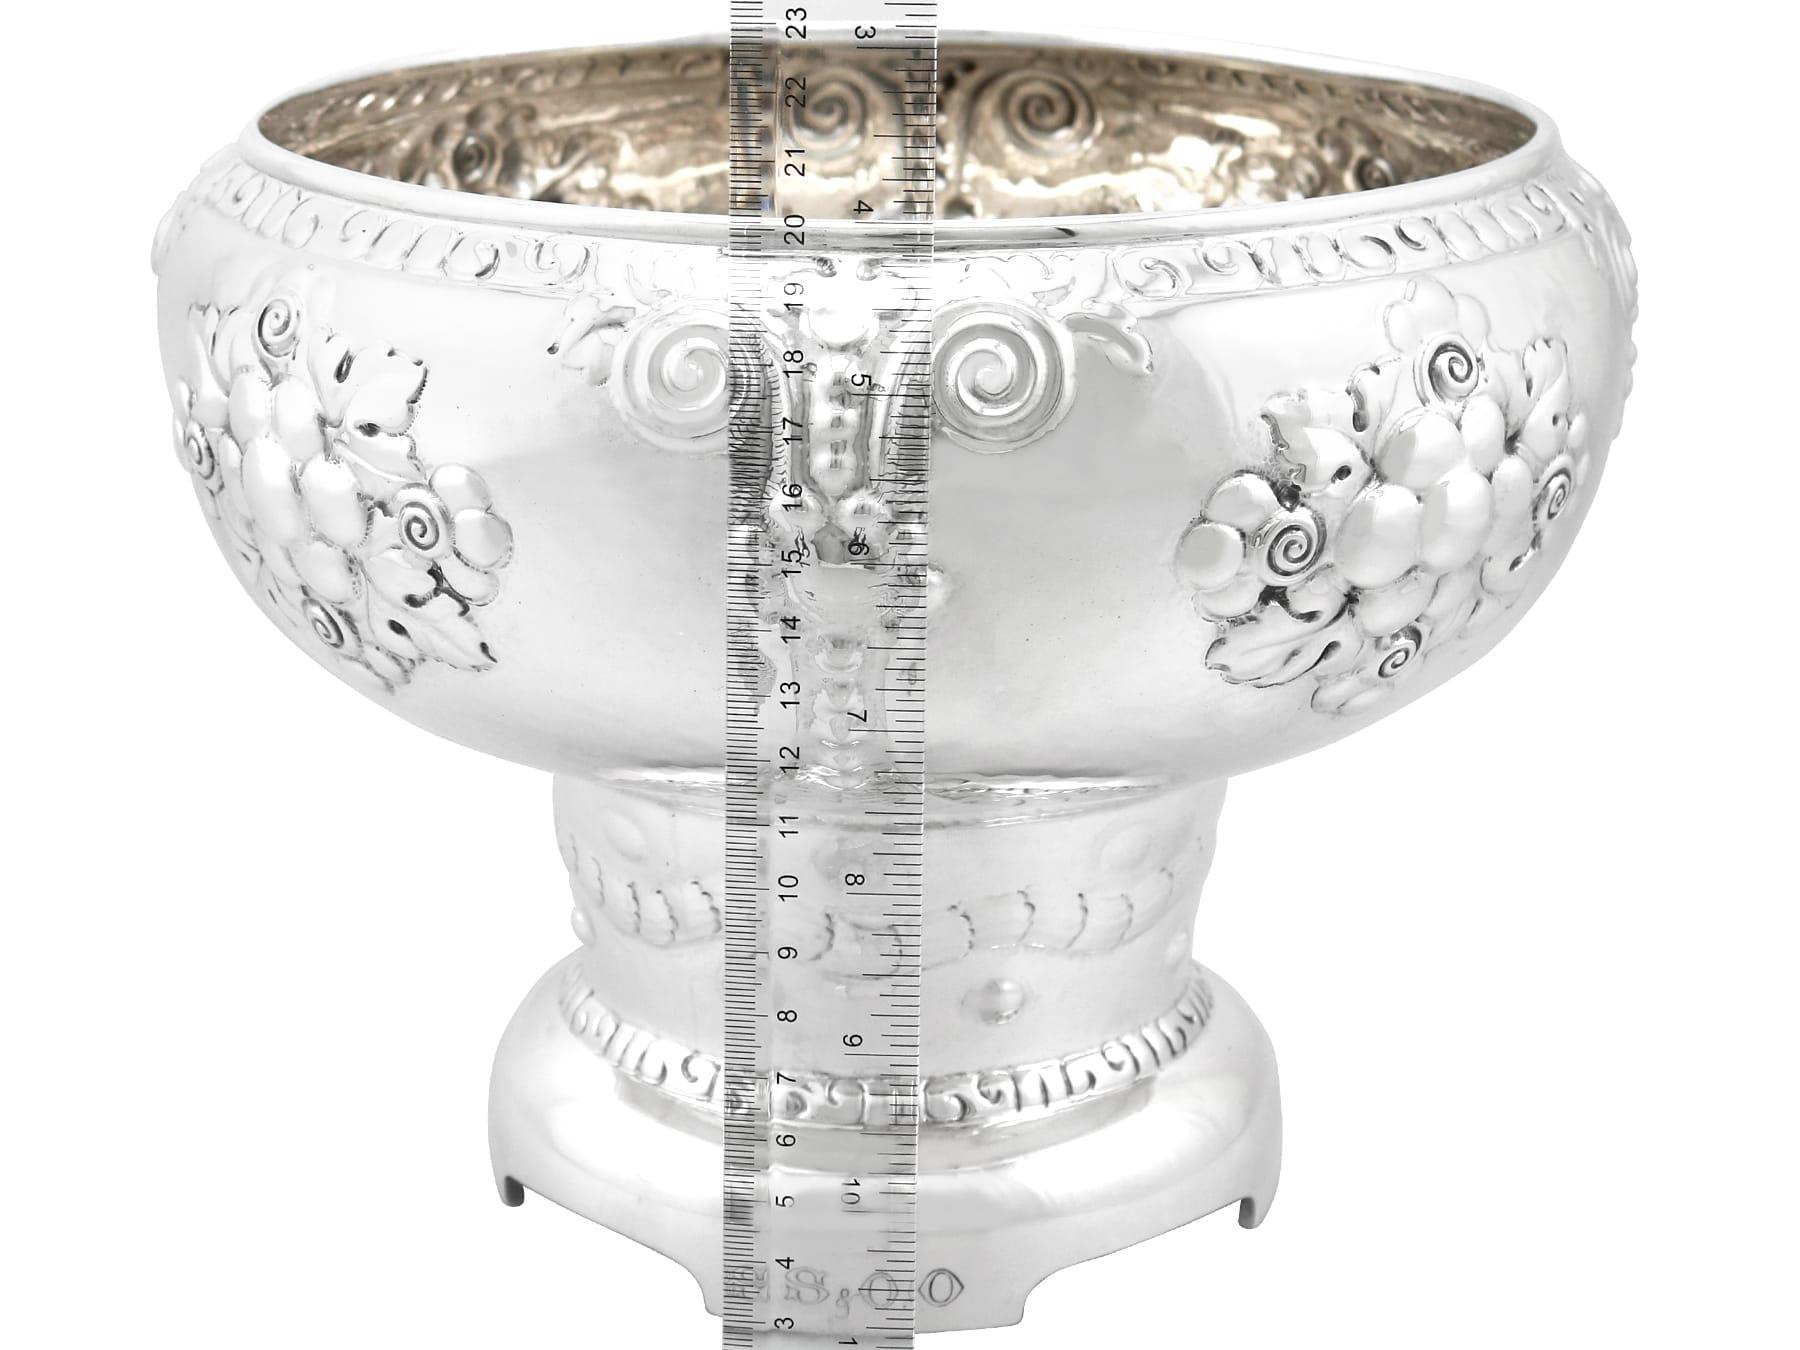 Magnus Aase Antique Norwegian Silver Presentation Bowl For Sale 3